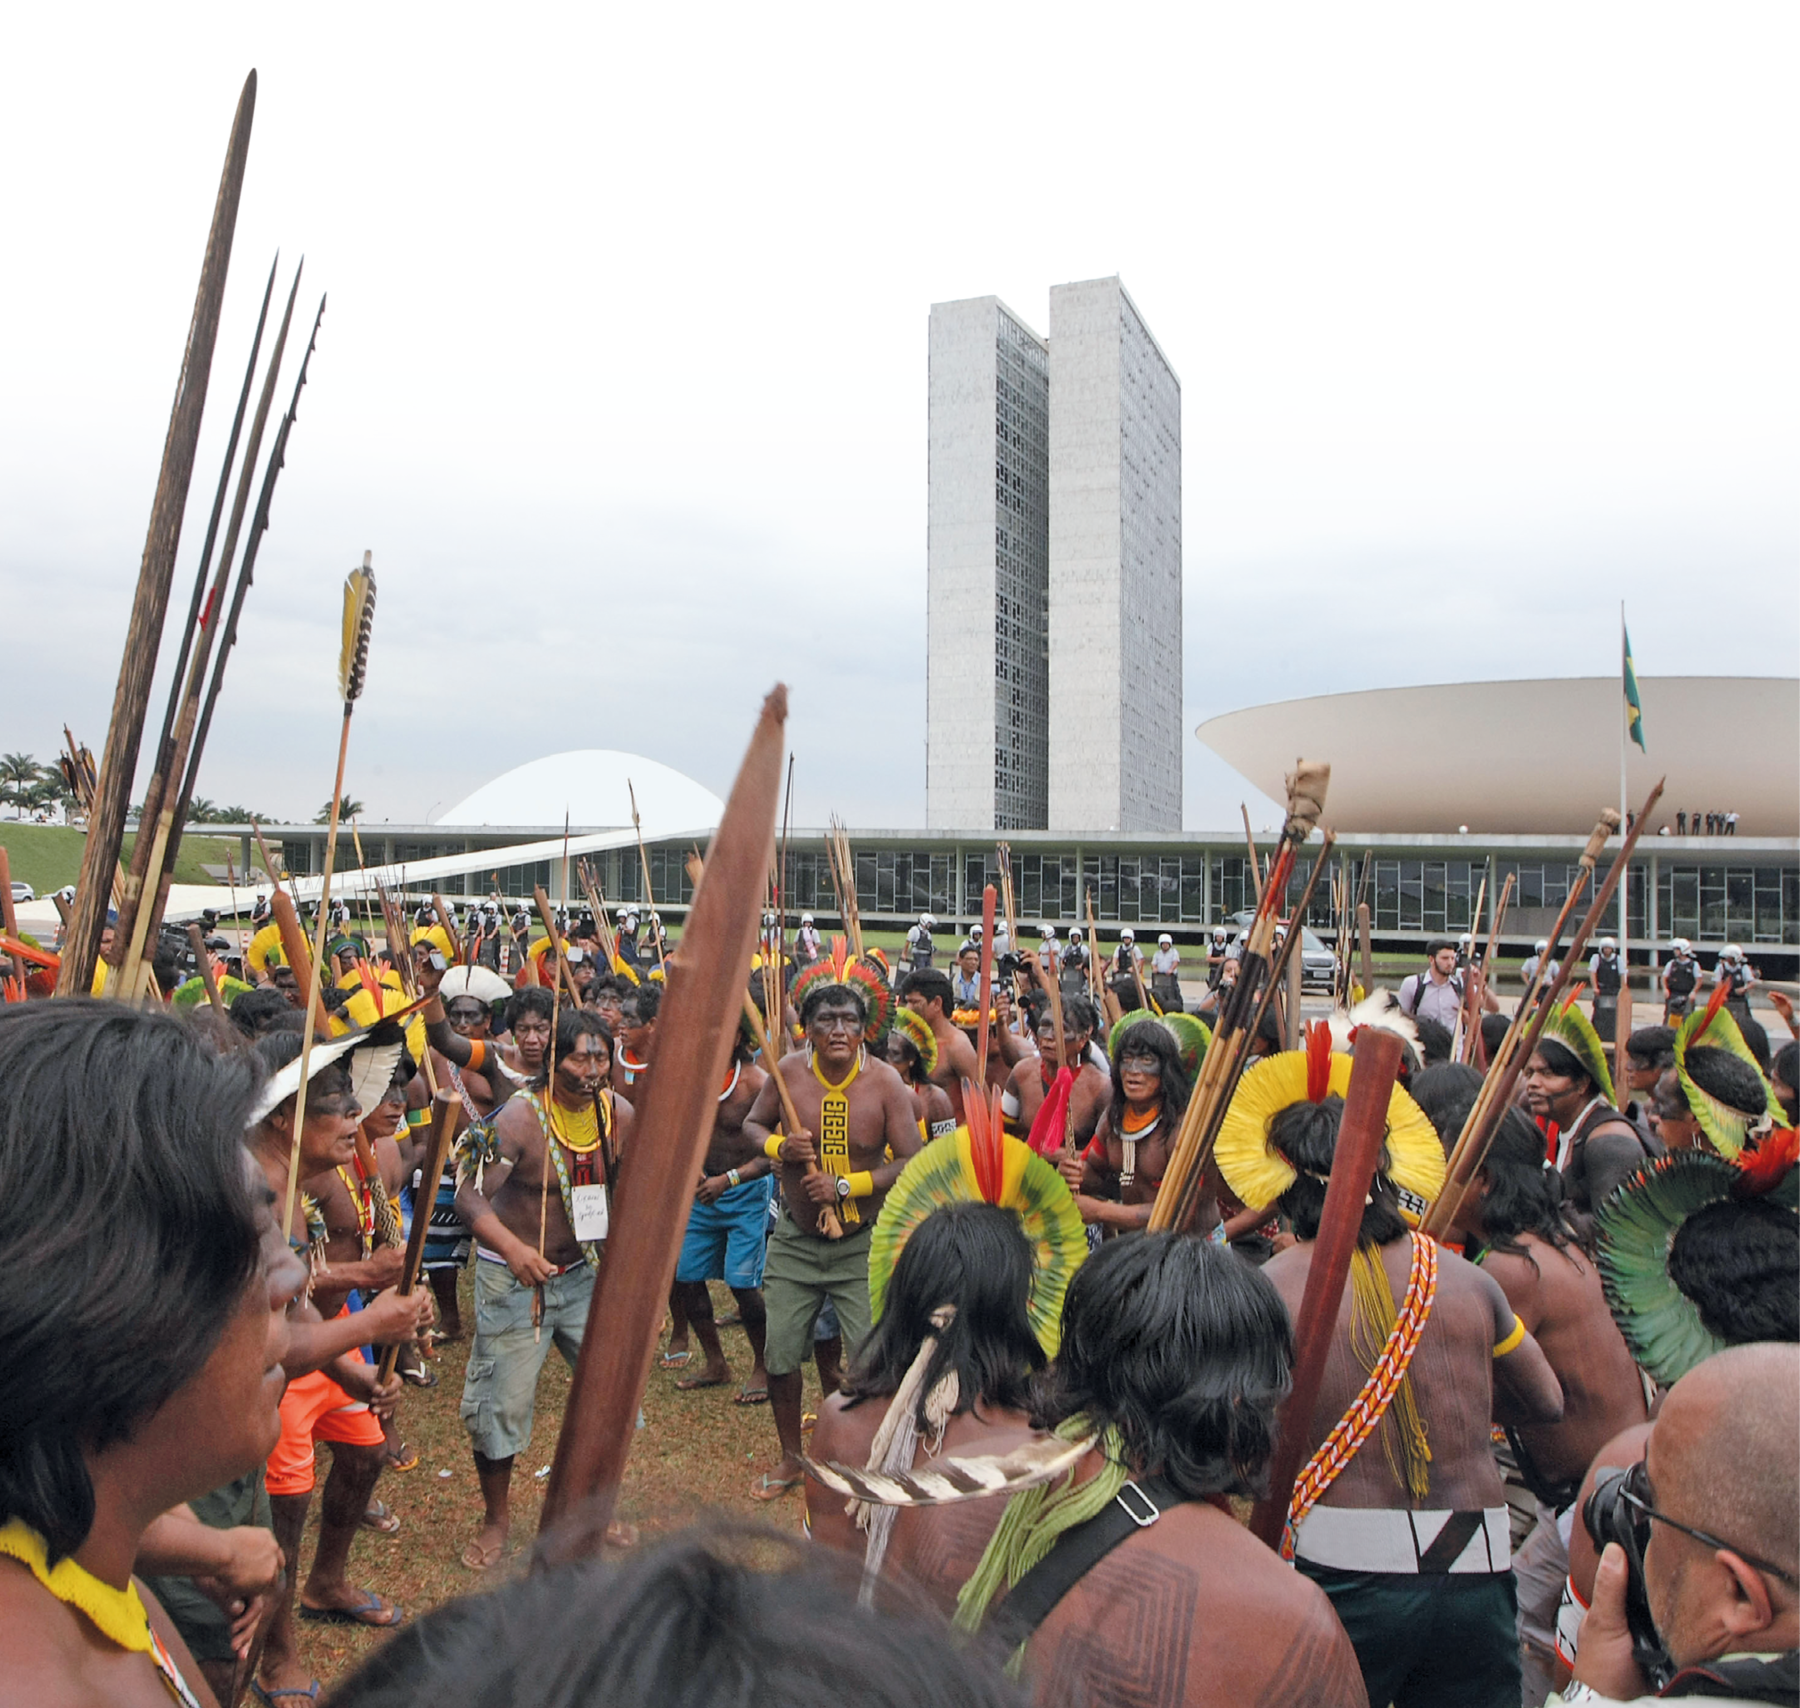 Fotografia. Homens indígenas em manifestação em frente ao Congresso Nacional, em Brasília. Muitos usam cocar e colar e estão com o rosto e o corpo pintados, carregando arcos e flechas, além de bastões de madeira. Ao fundo, há policiais acompanhando a manifestação de longe e os prédios do Congresso Nacional.